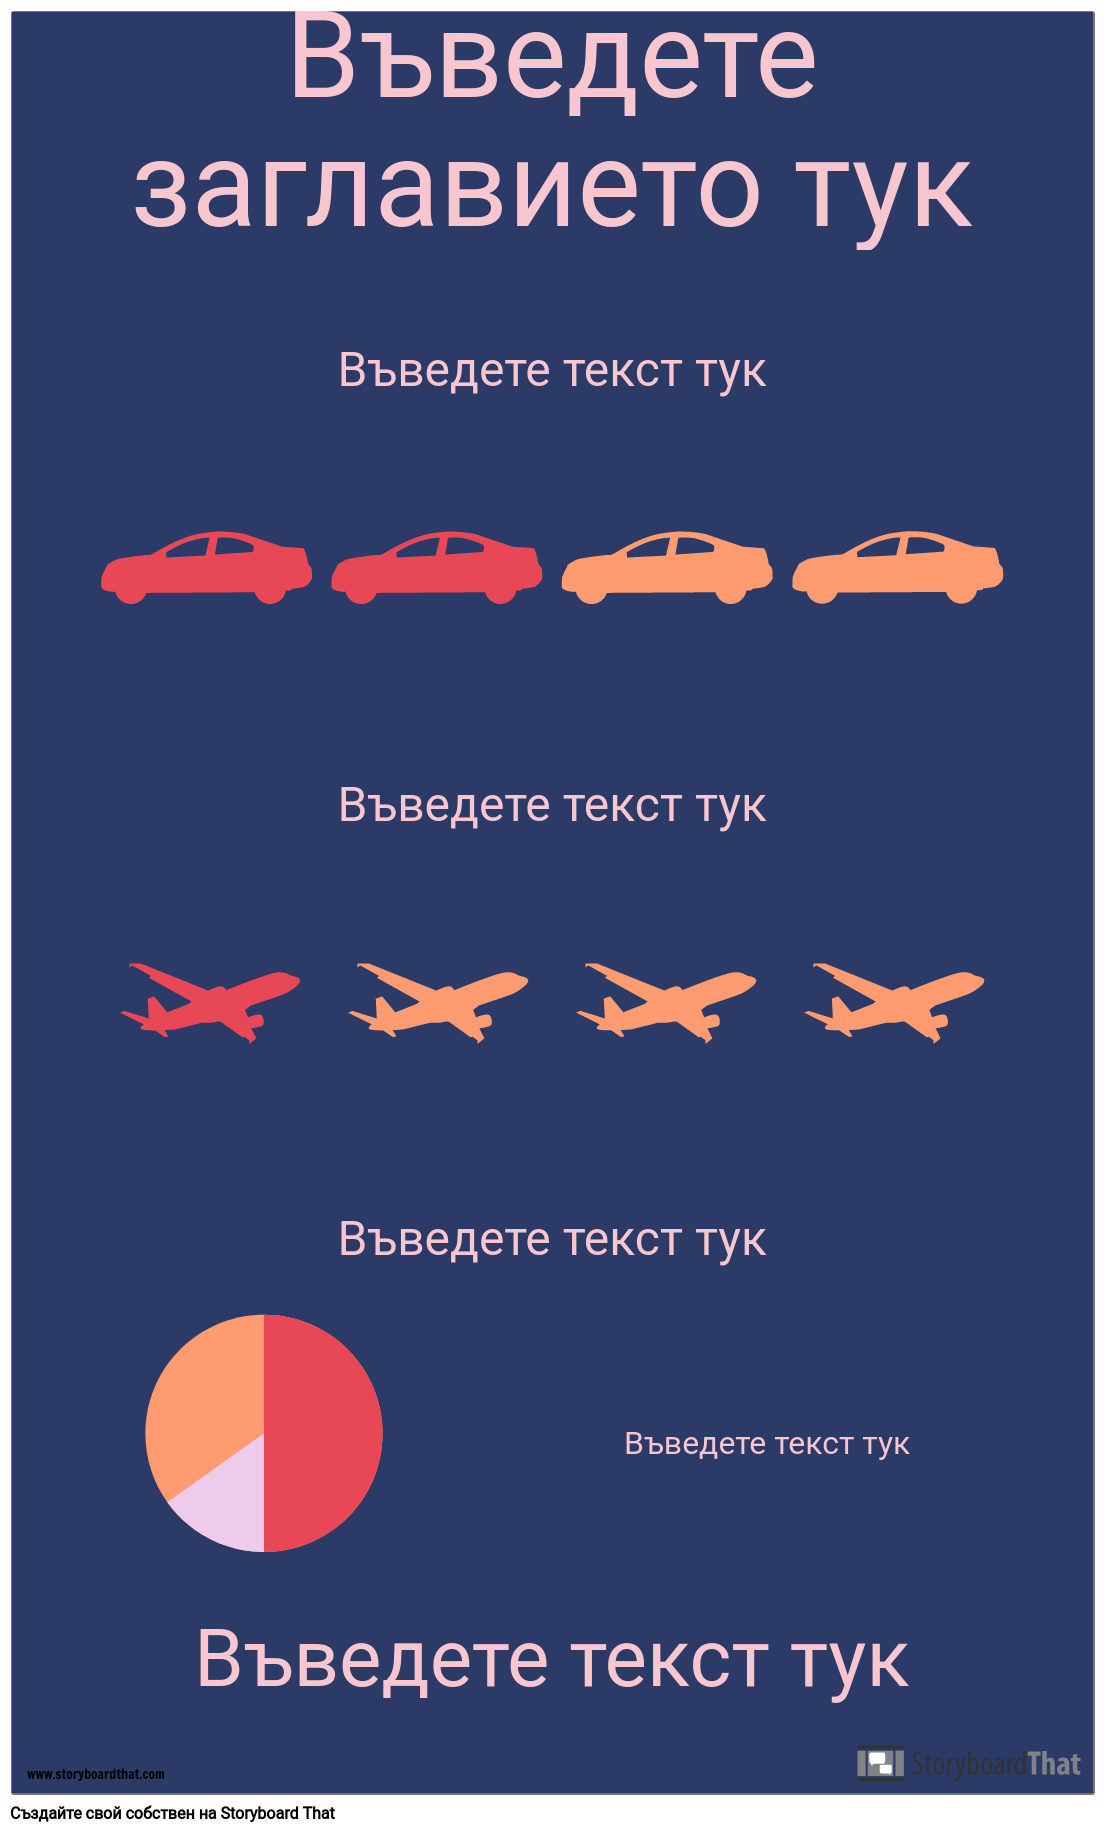 Транспорт PSA Infographic